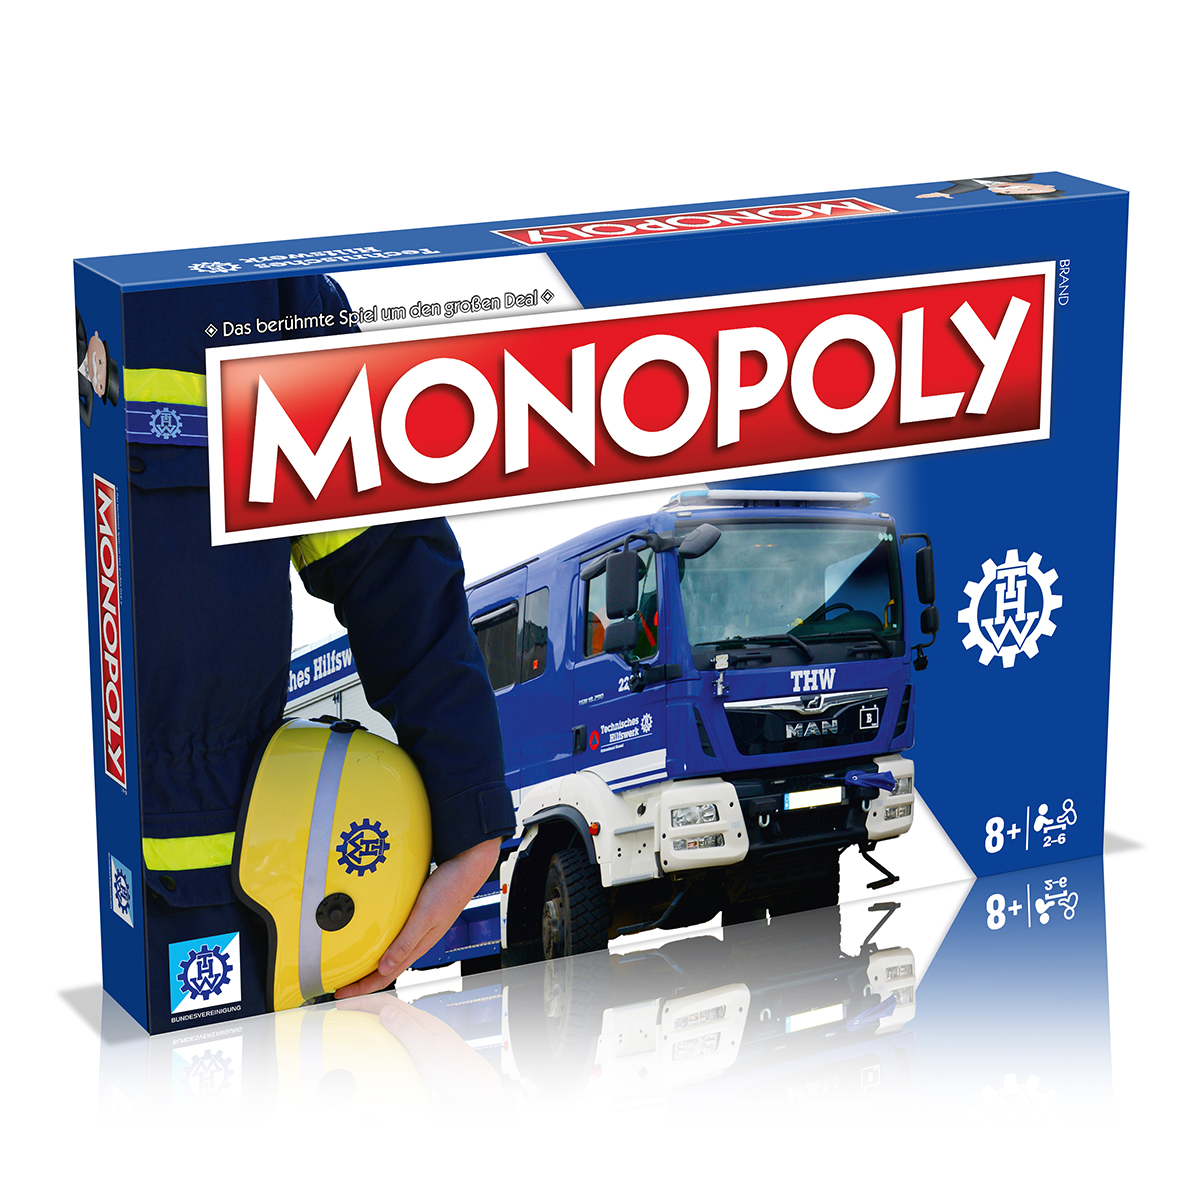 Monopoly - Technisches Hilfswerk (THW)